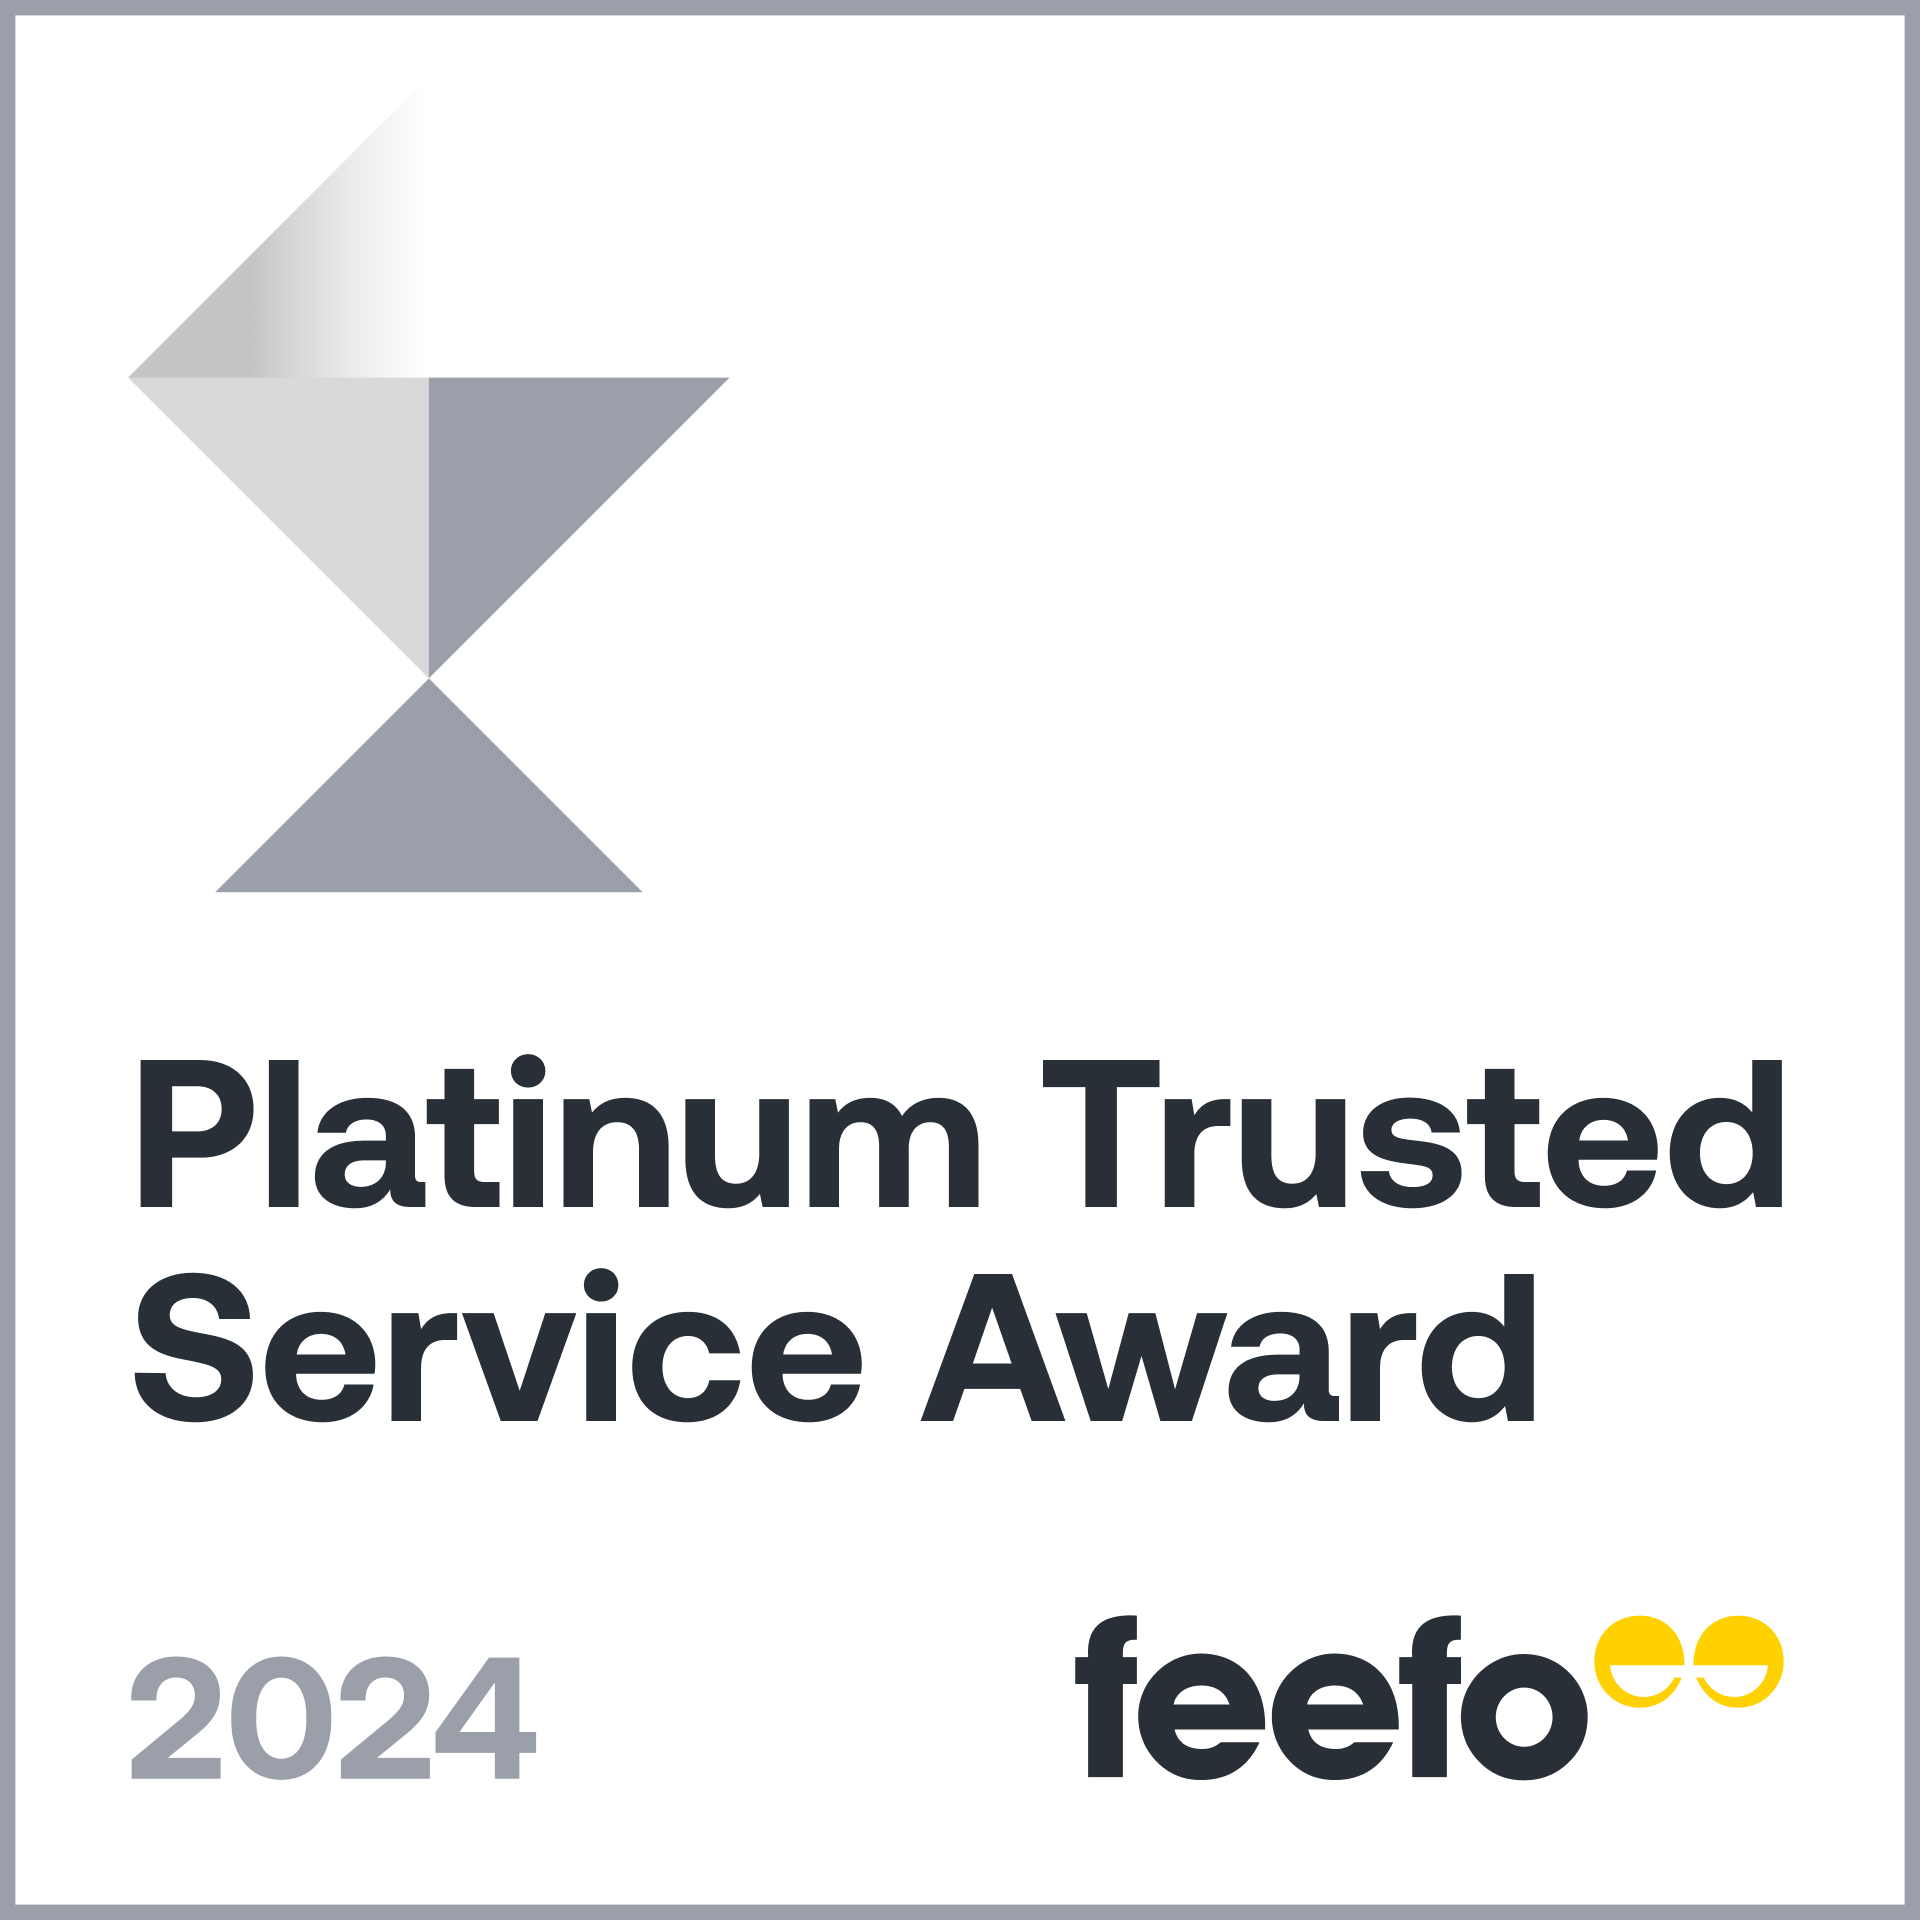 Platinum Trusted Service